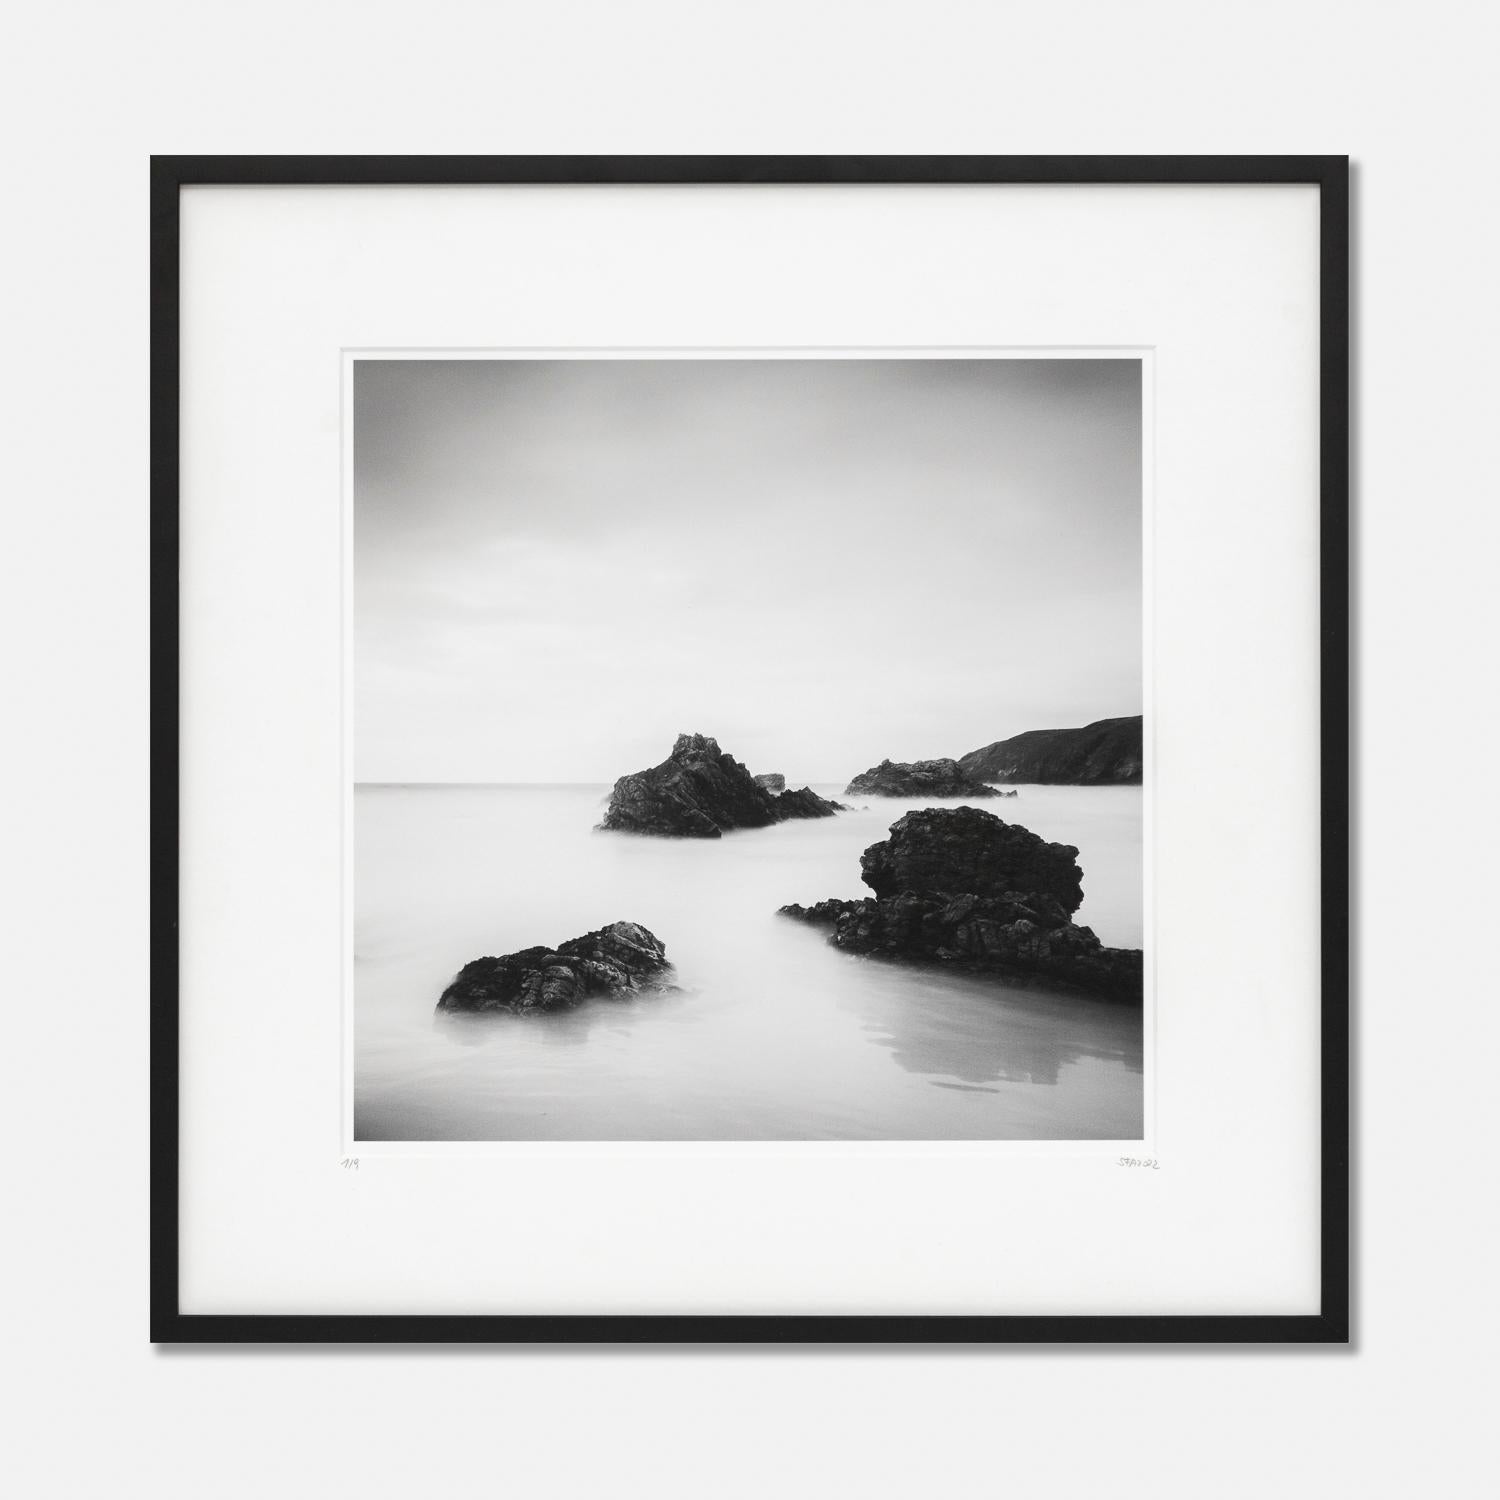 Landscape Photograph Gerald Berghammer - Paysage d'art en noir et blanc de Winning Beach, Écosse, cadre en bois